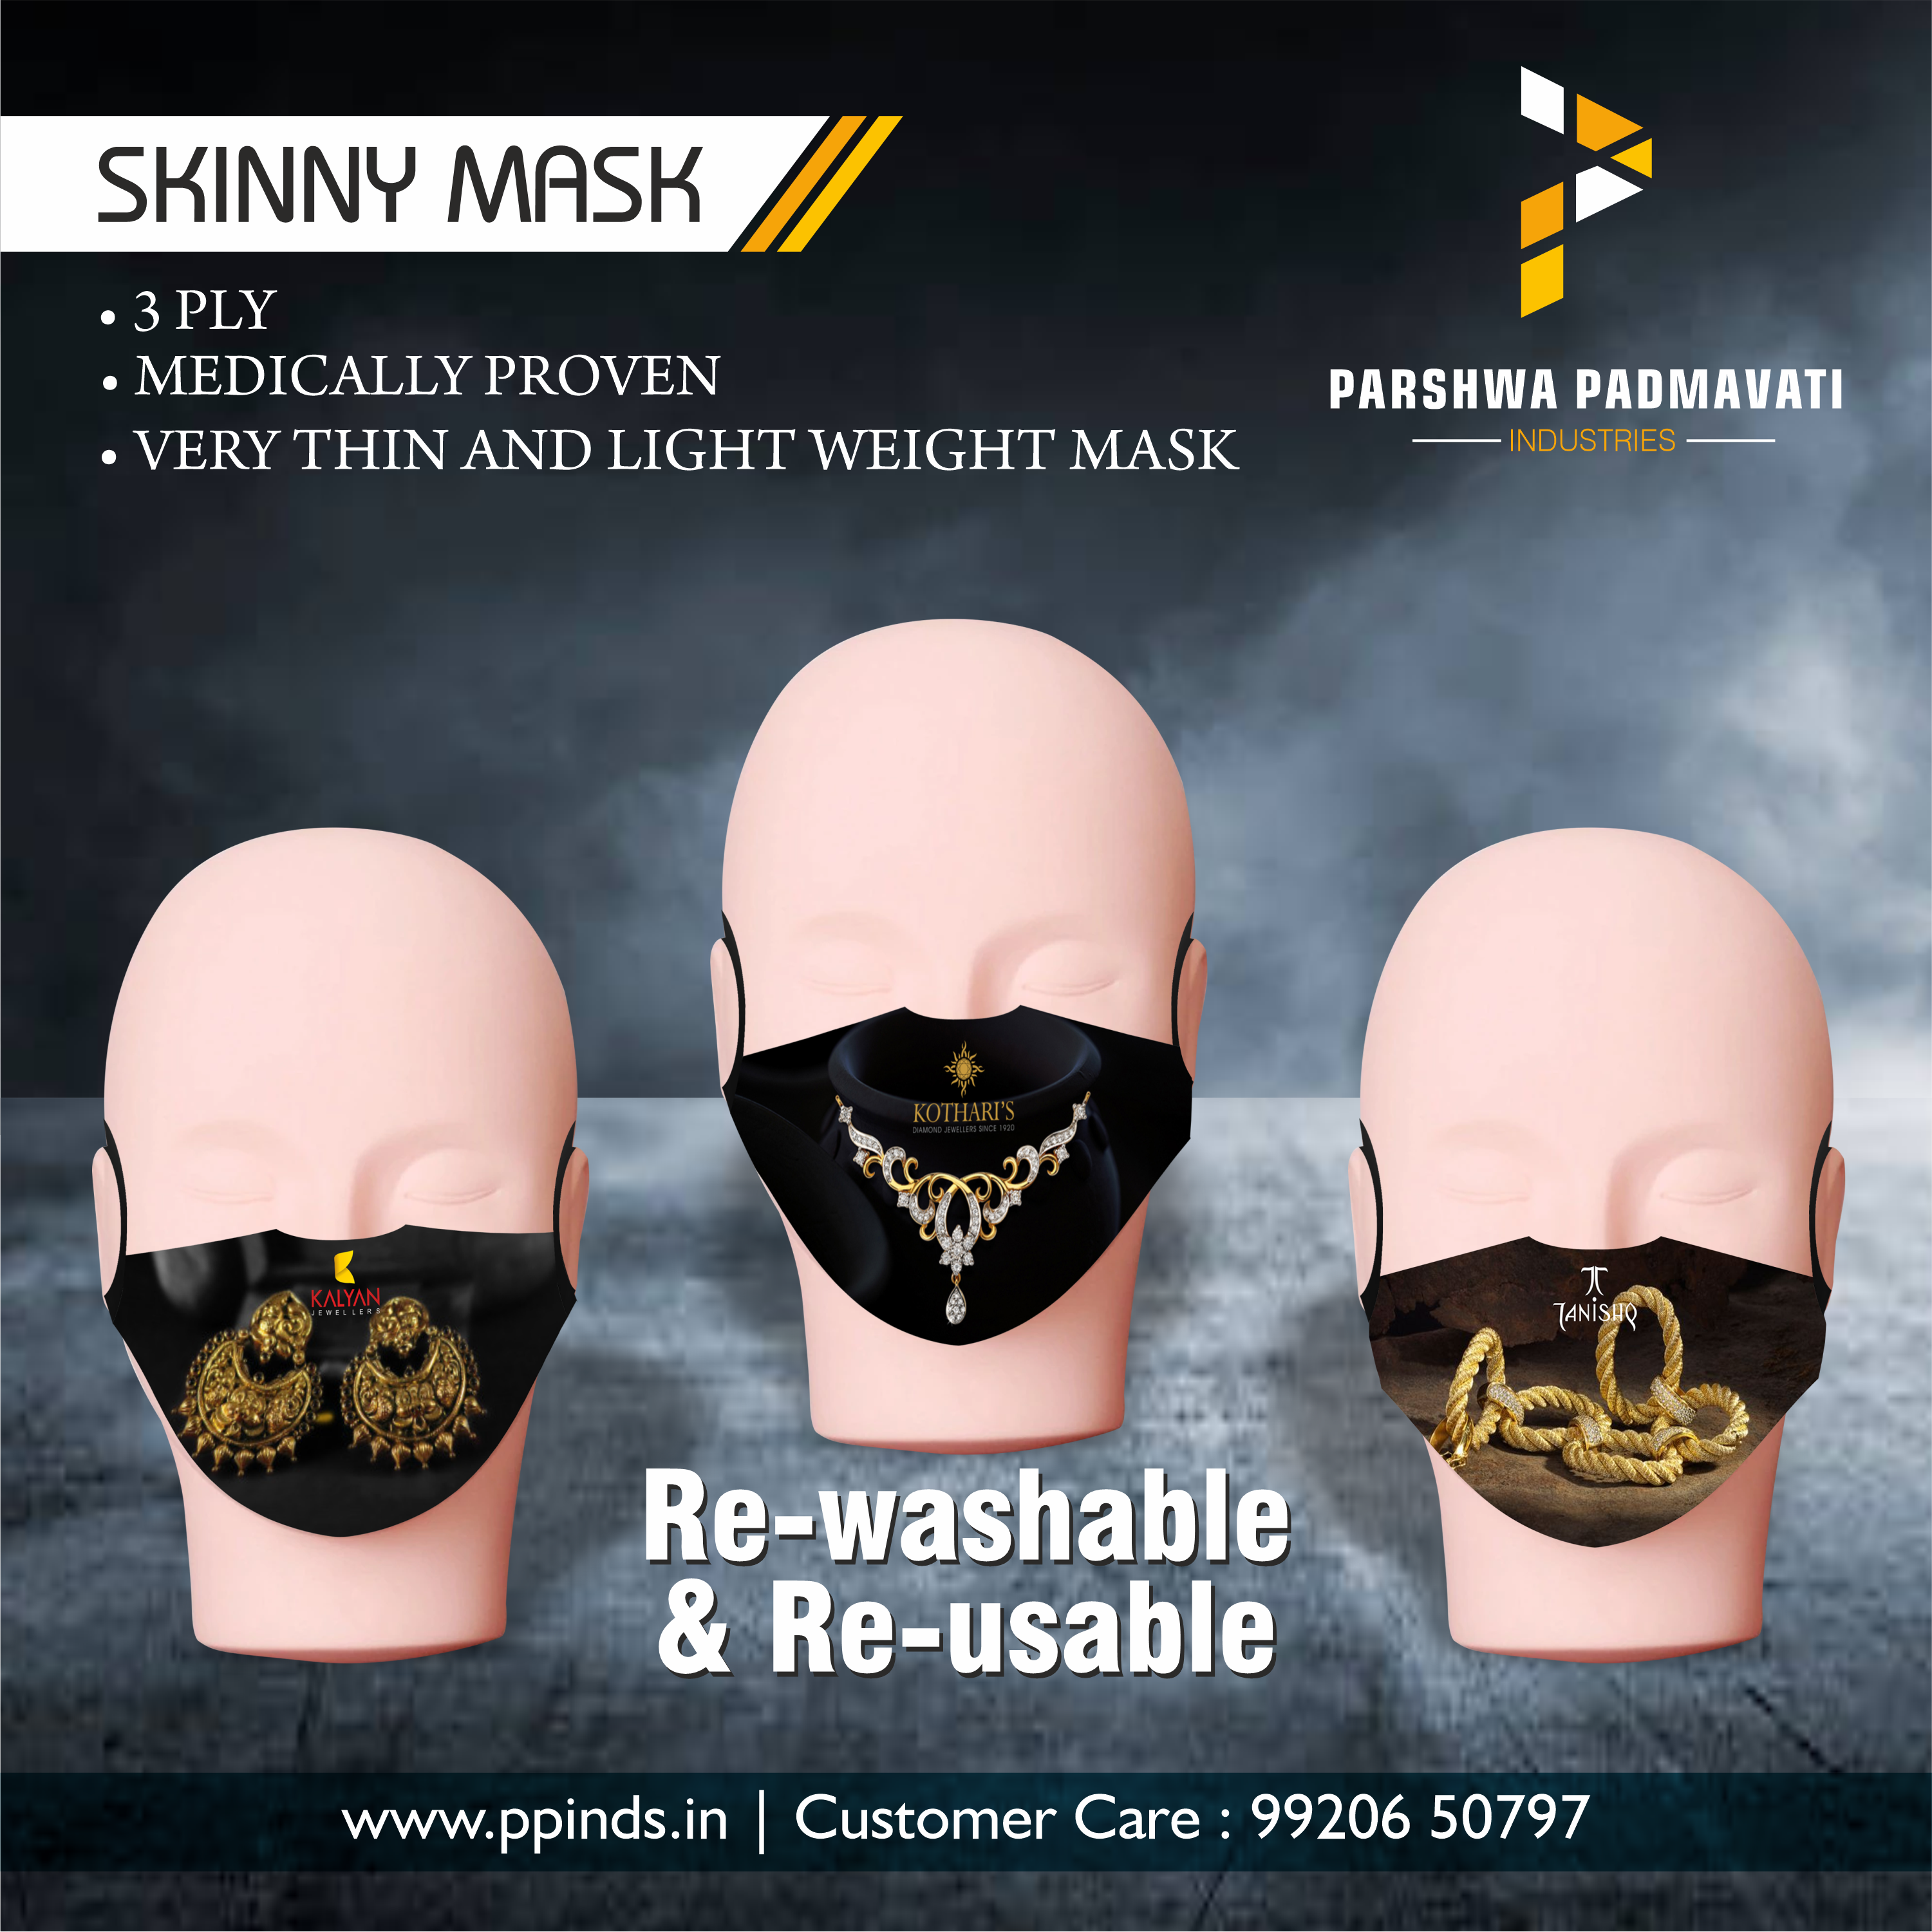 Skinny Mask